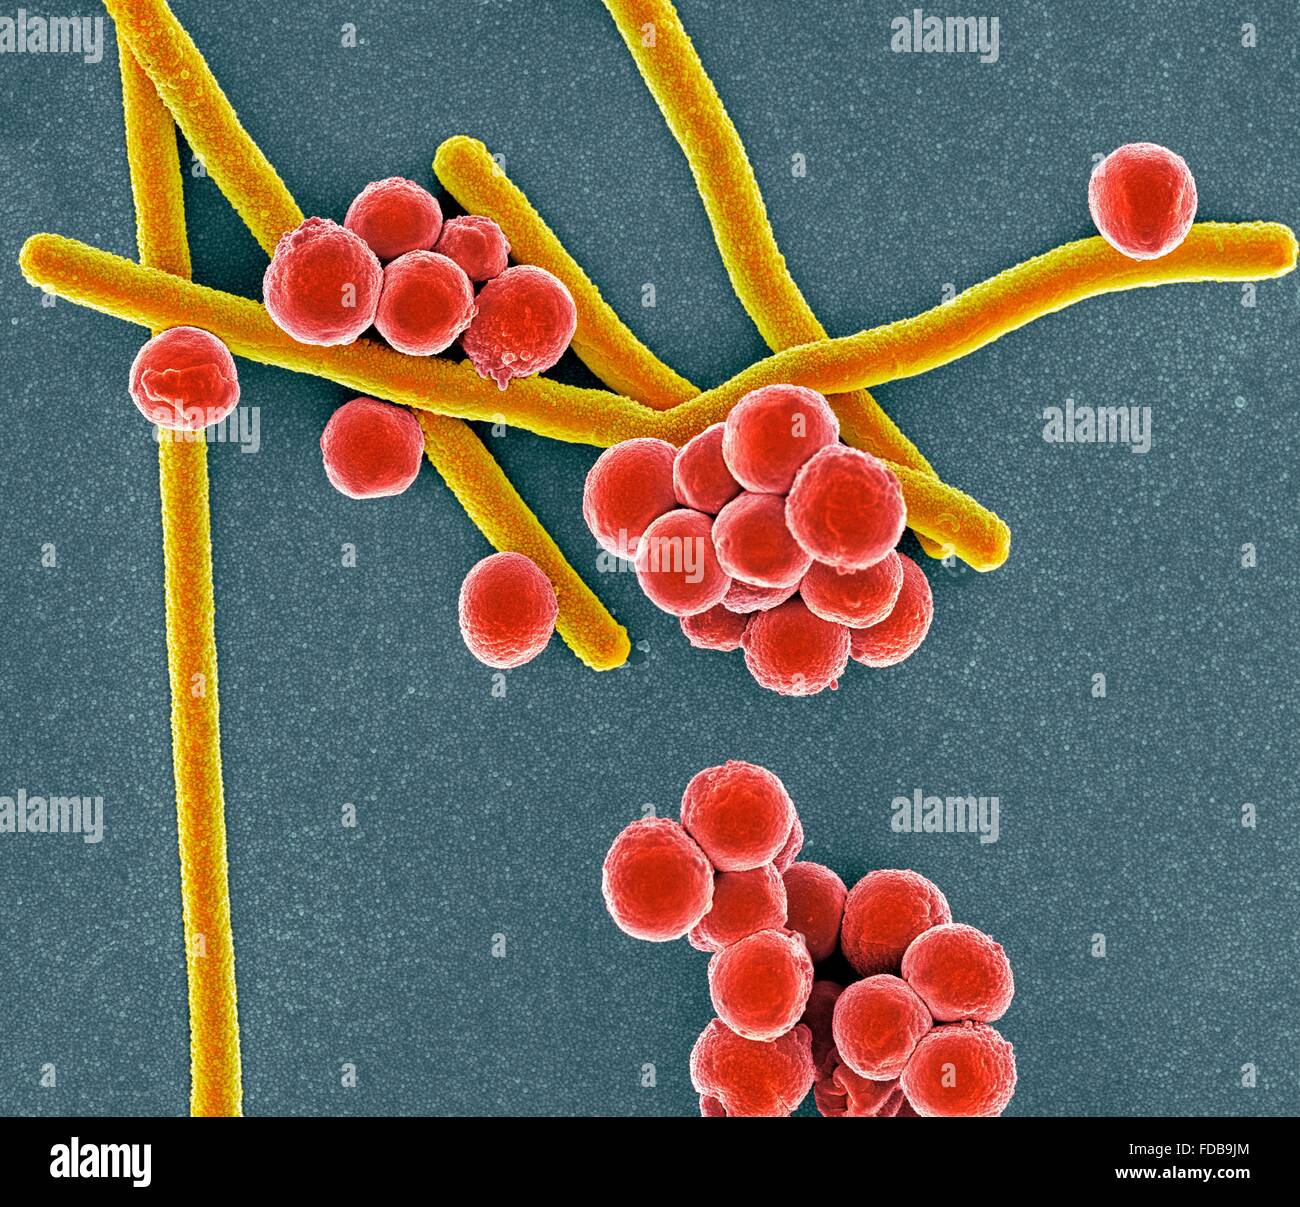 Farbige scanning Electron Schliffbild (SEM) von stabförmigen (Bacillus) und rund (Coccus) Bakterien. Stockfoto